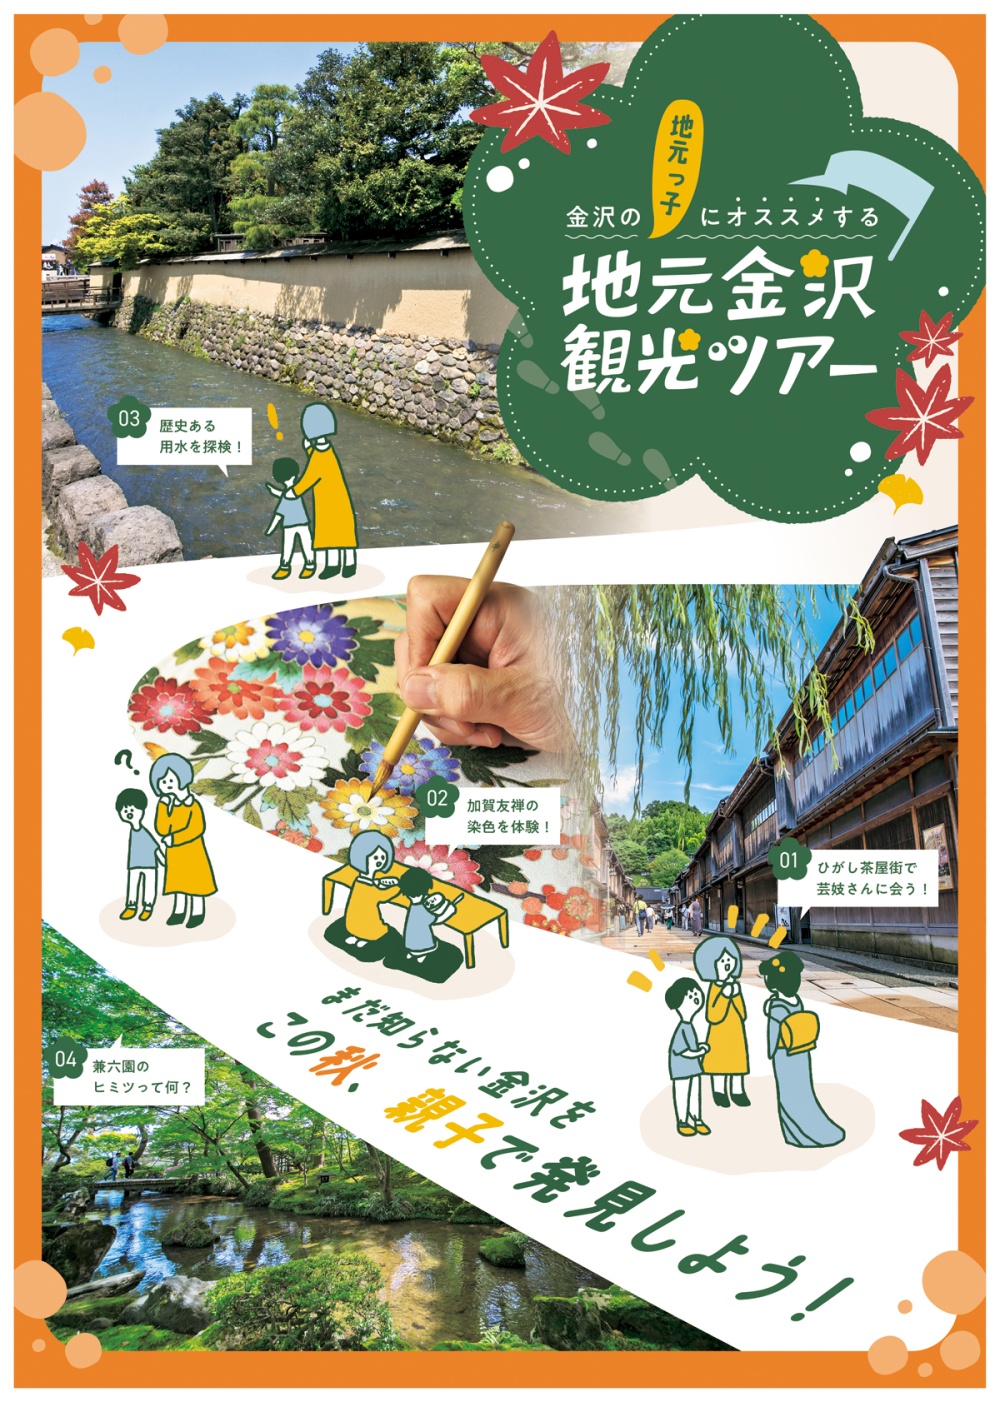 金沢市民「地元金沢観光ツアー」ポスター